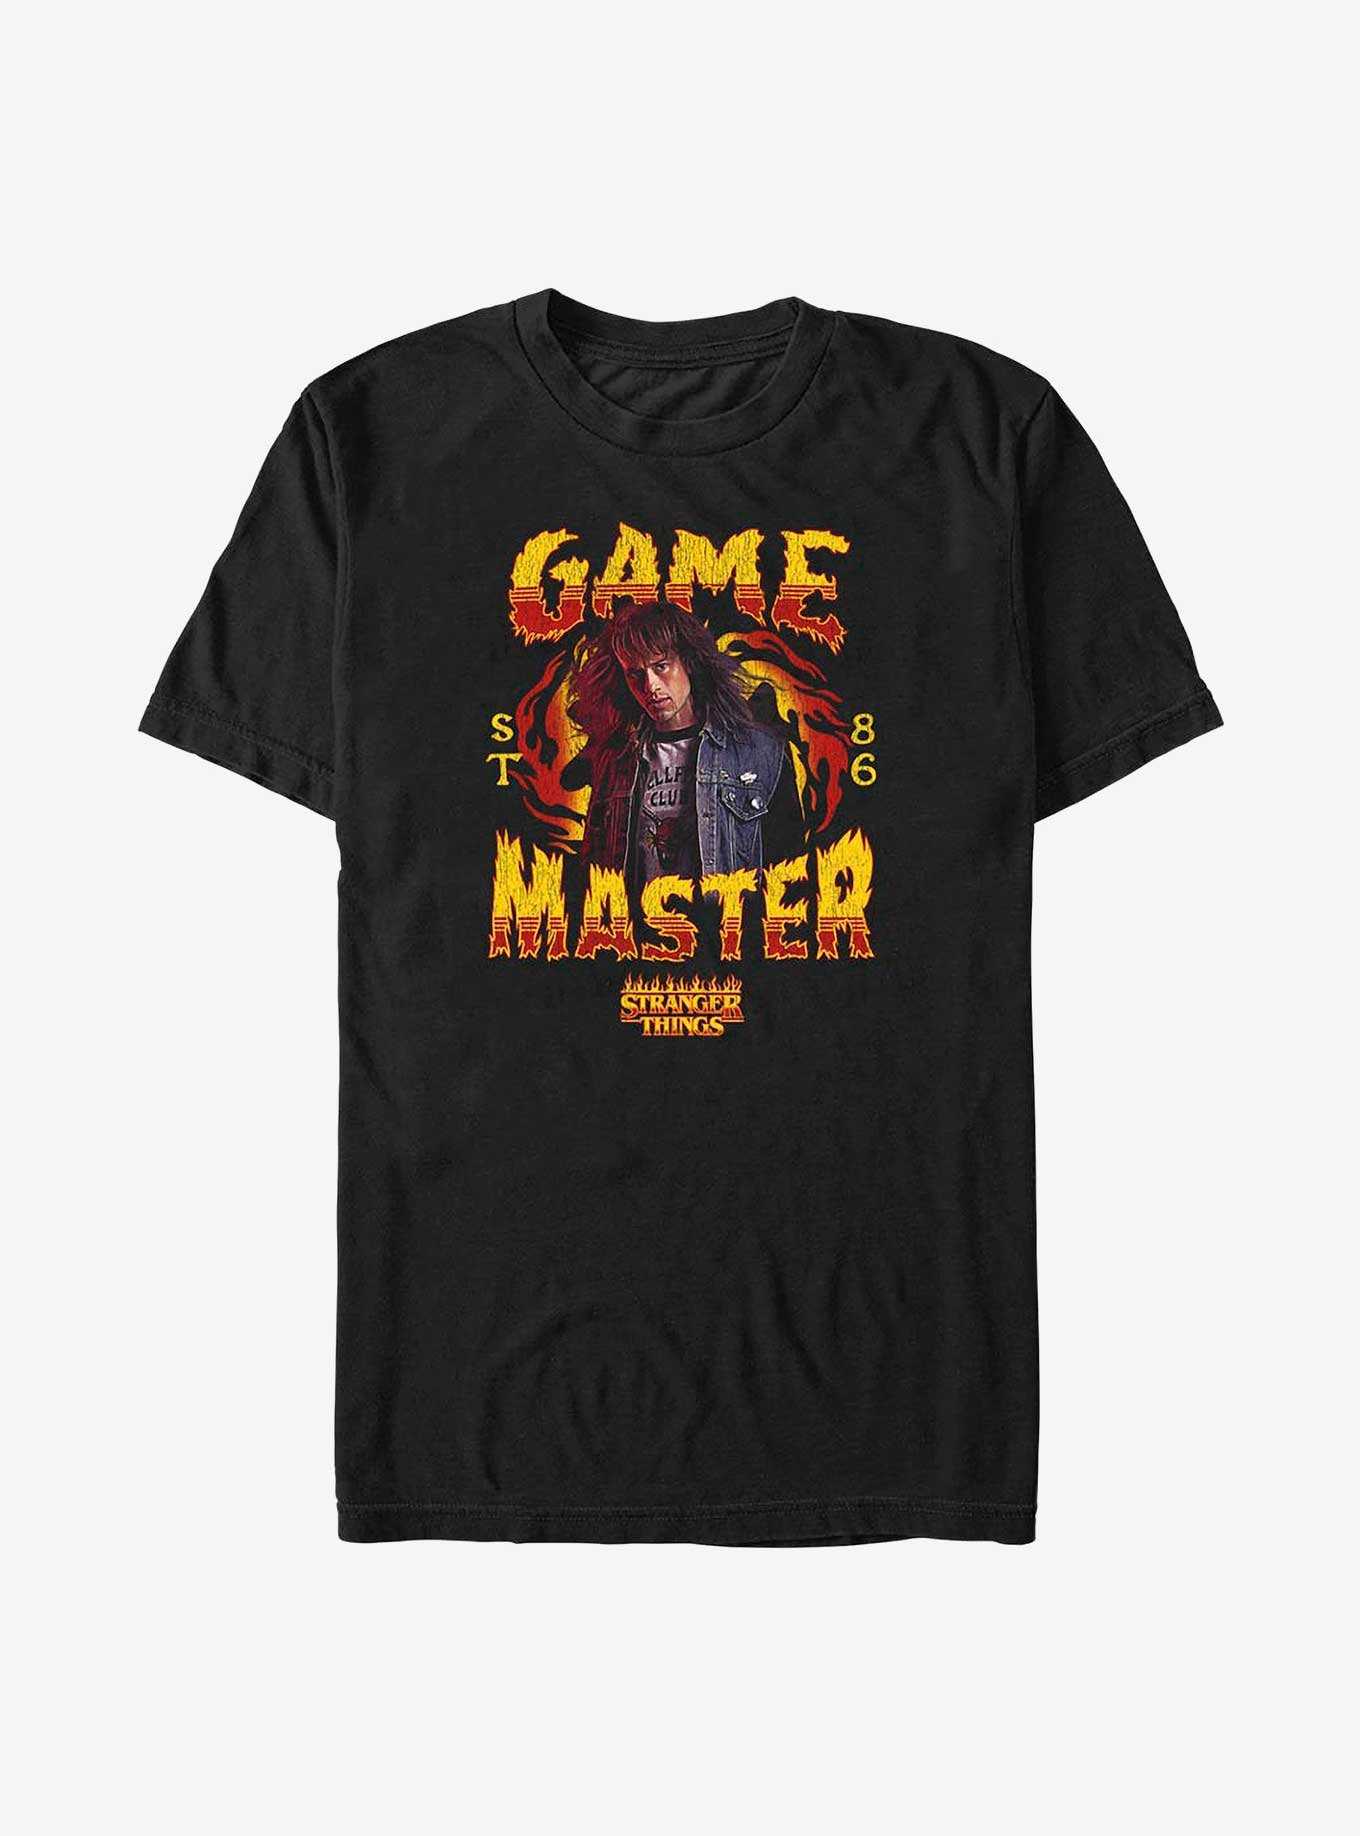 Stranger Things Game Master Eddie Munson Big & Tall T-Shirt, , hi-res